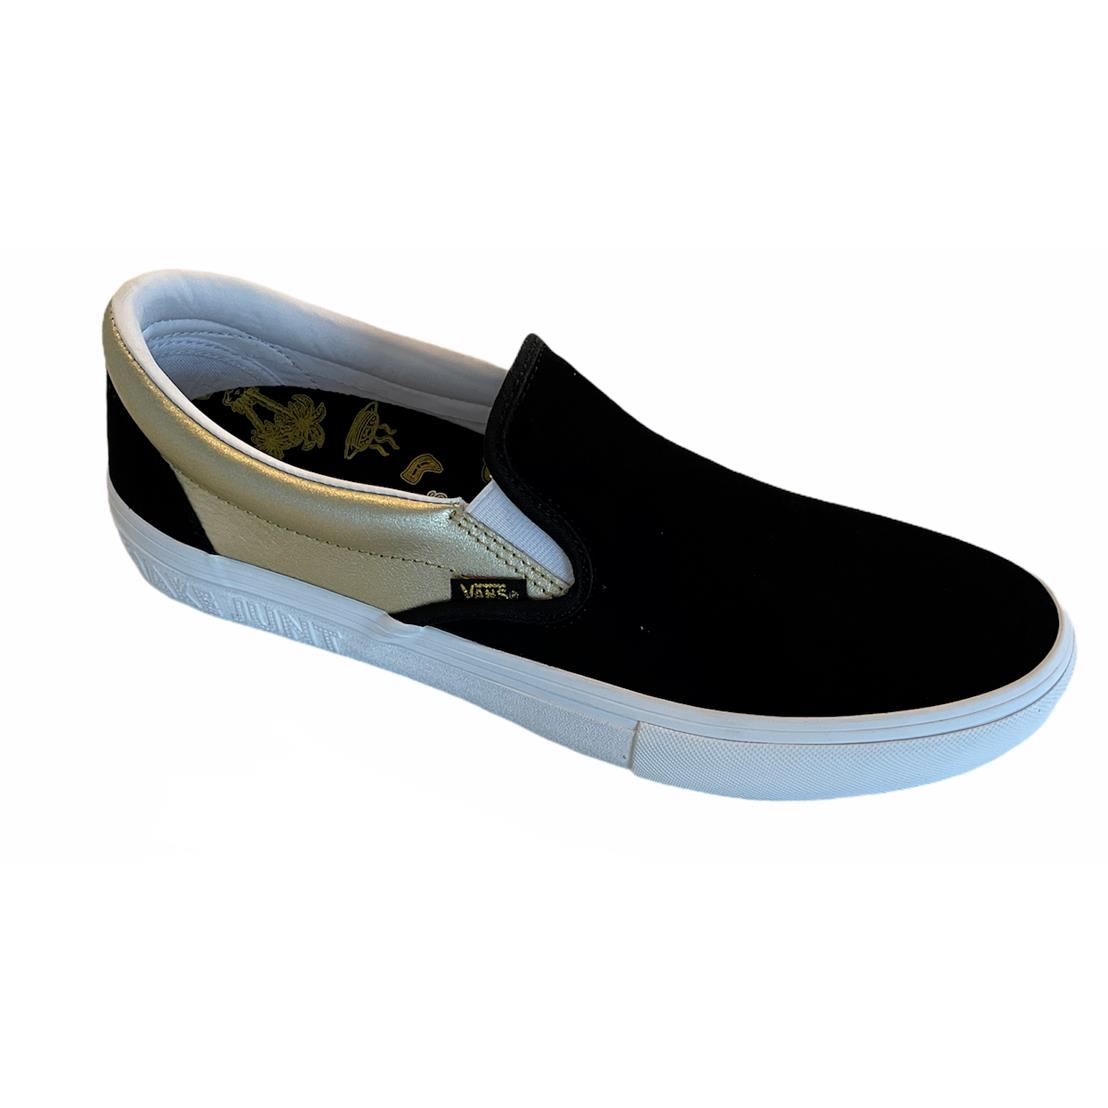 Vans Shake Junt Slip On Pro Black Gold Men`s Skate Shoes Size 12 Fast